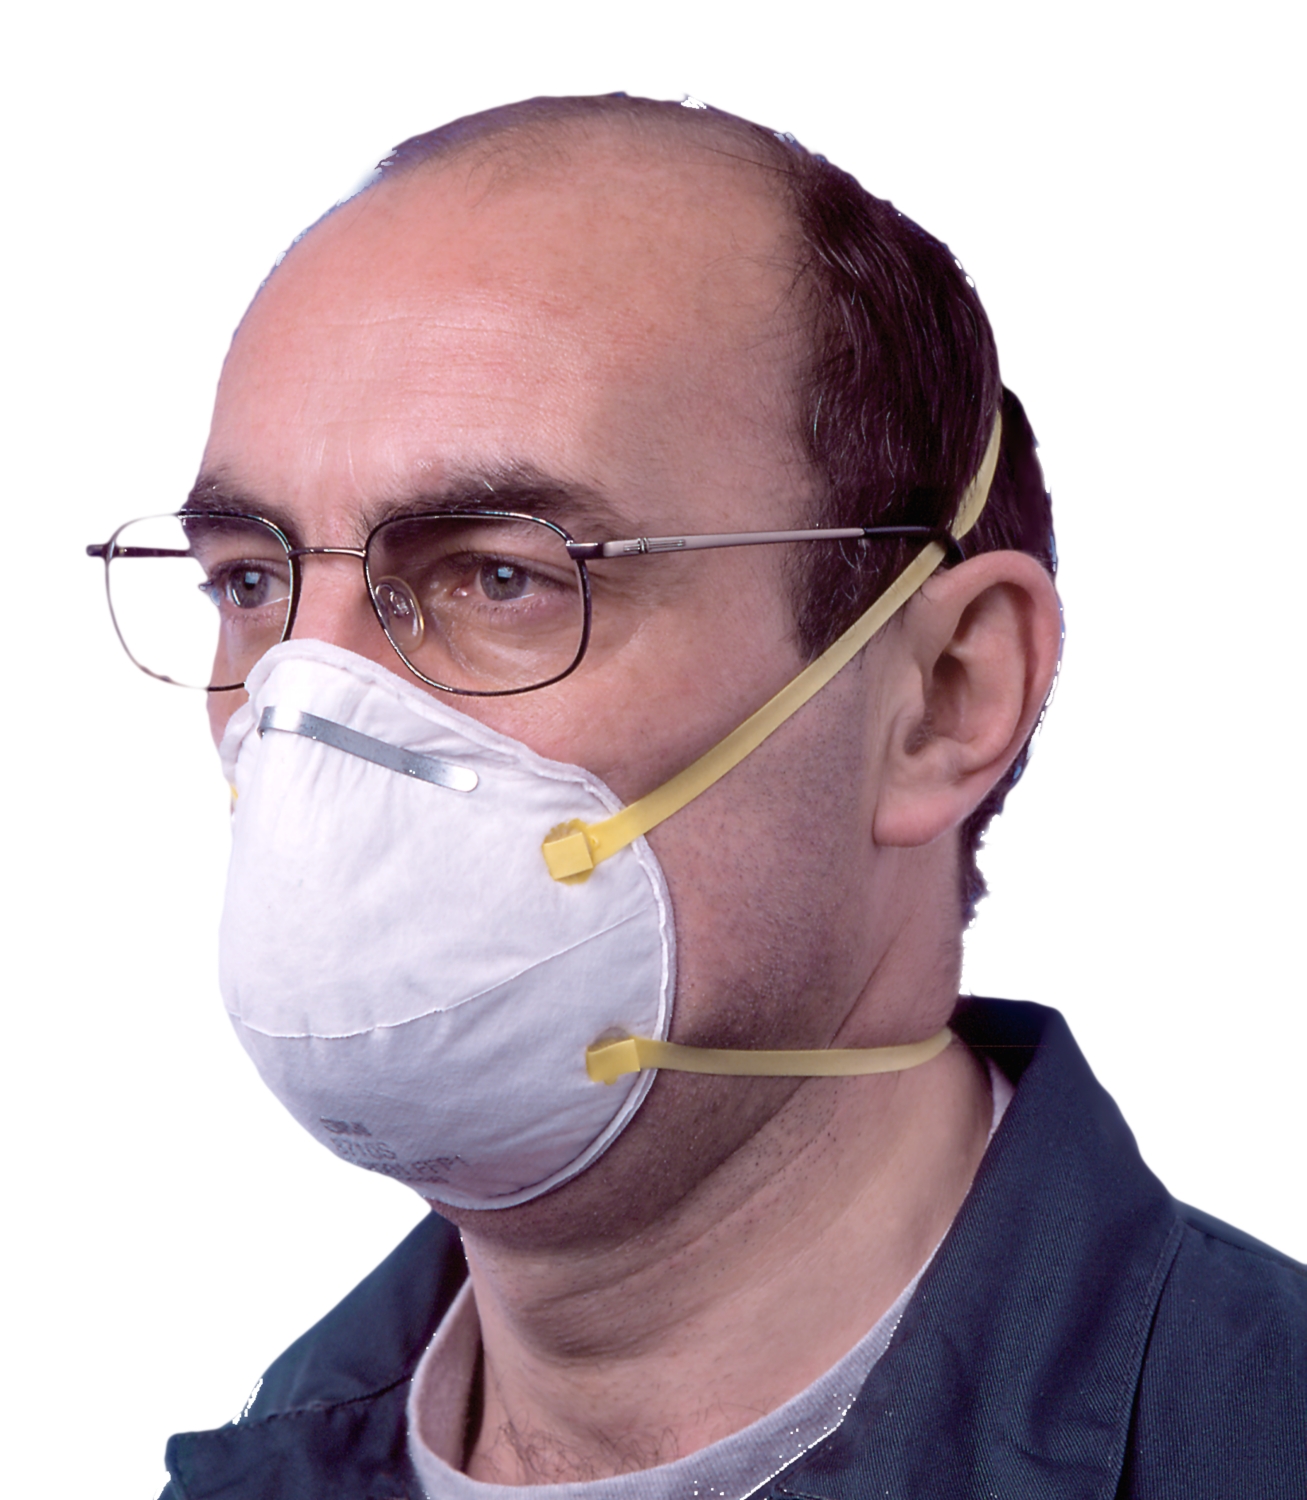  Masque jetable anti-poussière 8710 - FFP1 - Boîte de 5 